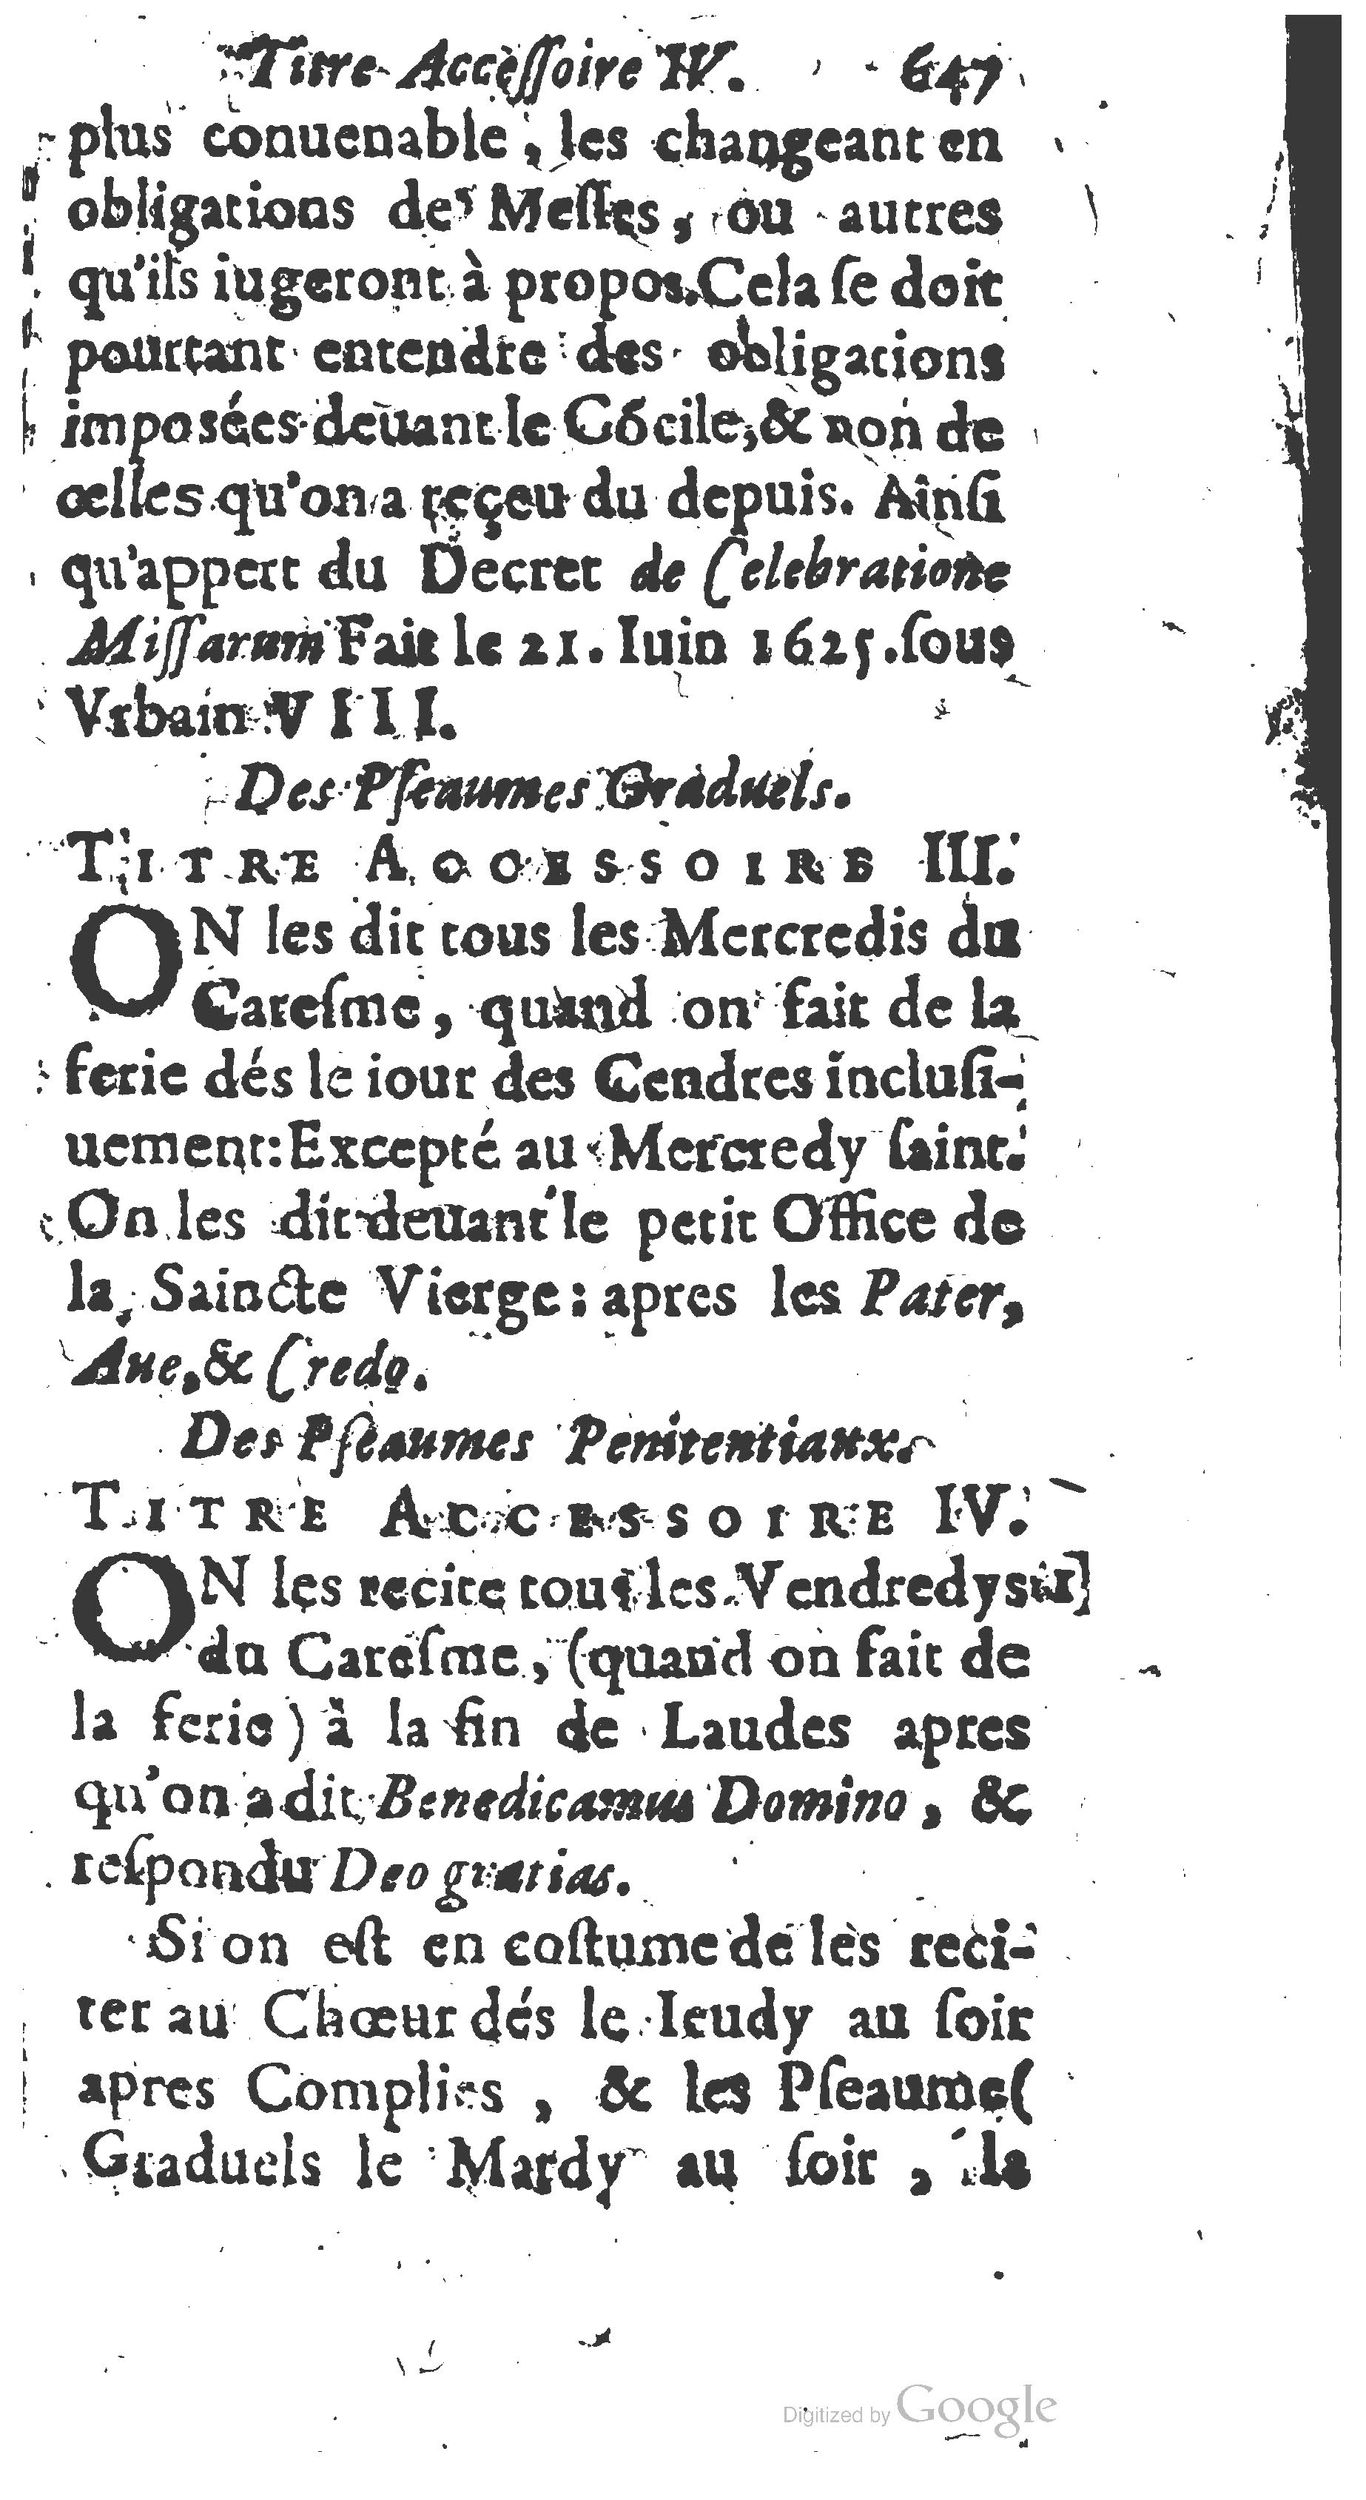 1651 Abrégé du trésor des cérémonies ecclésiastiques Guillermet_BM Lyon_Page_666.jpg